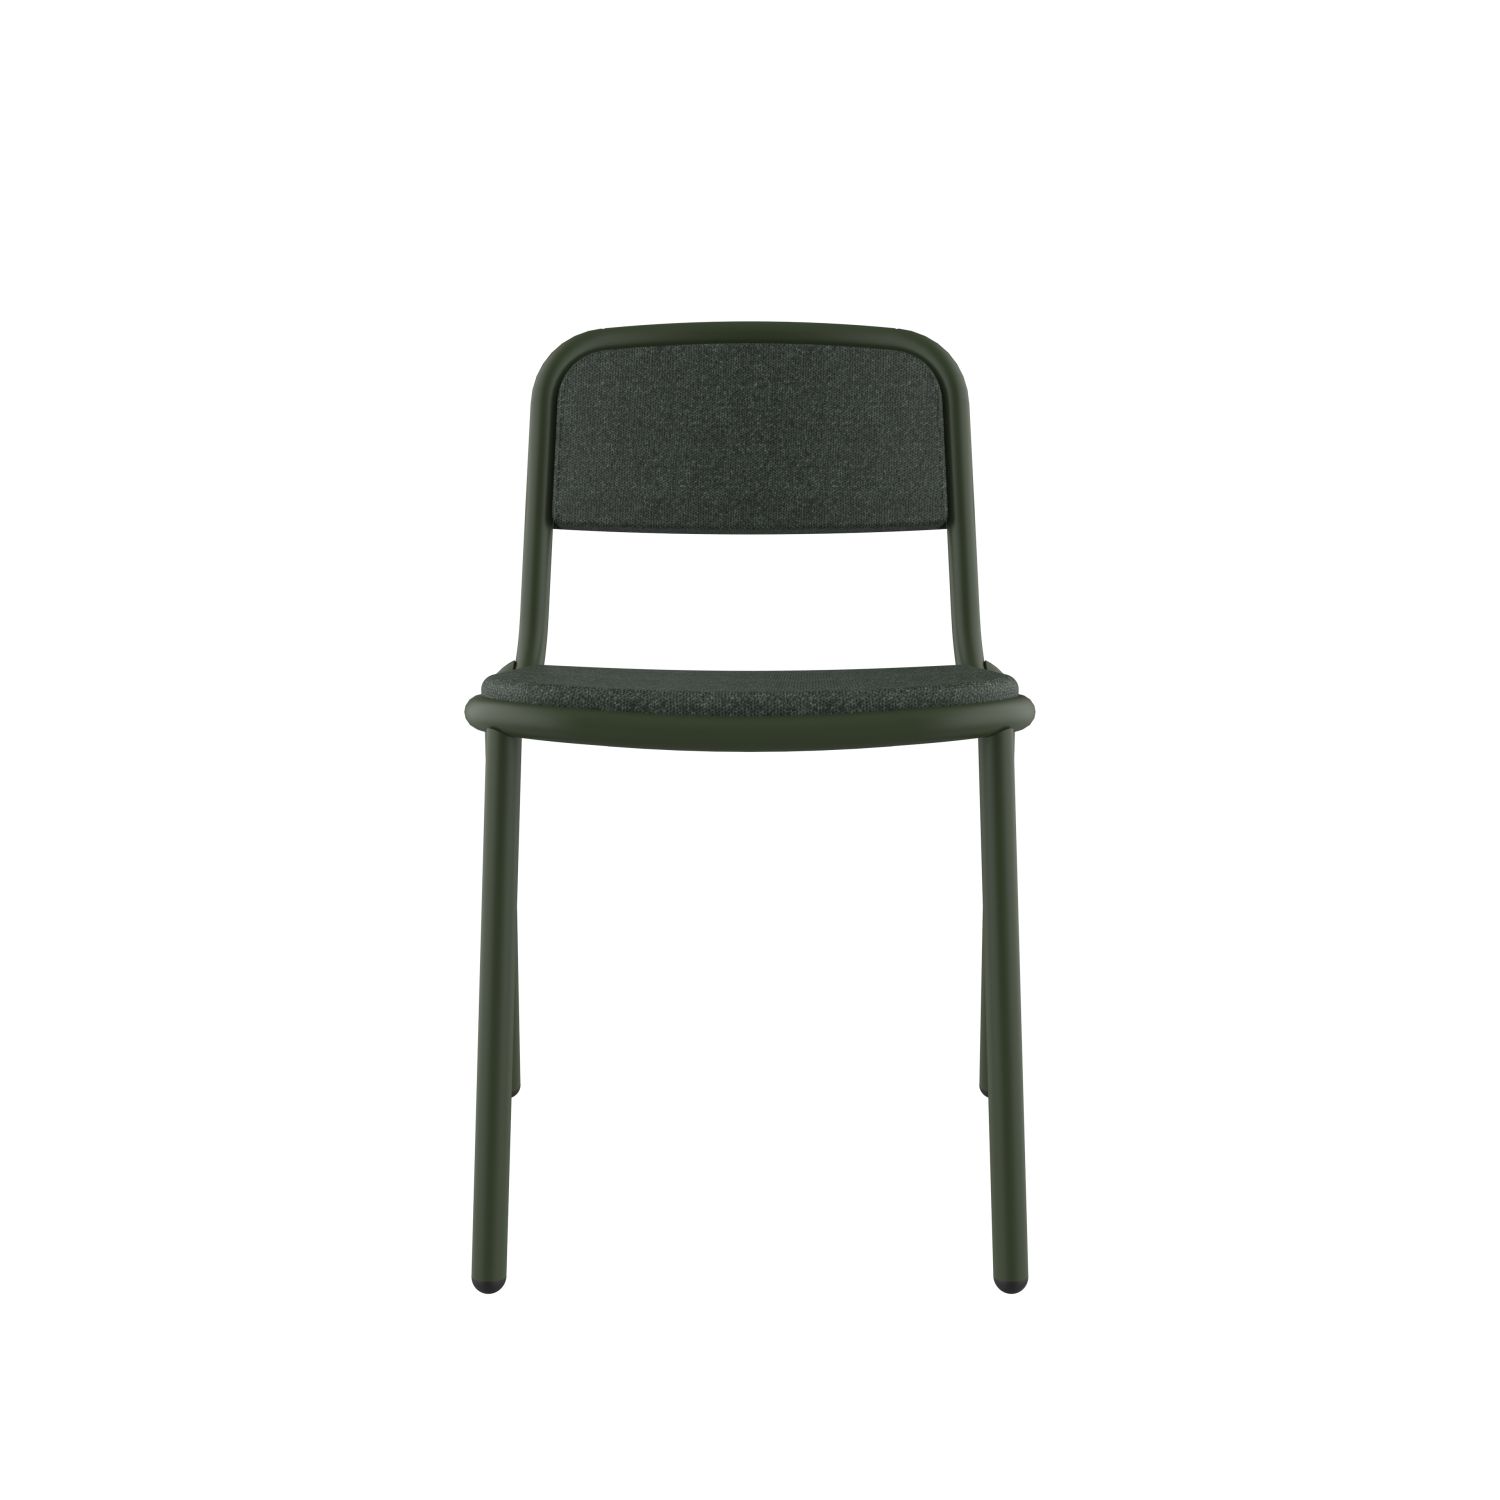 lensvelt stefan scholten loop chair upholsterd stackable without armrest moss summer green 38 price level 1 chrome green ral6020 hard leg ends